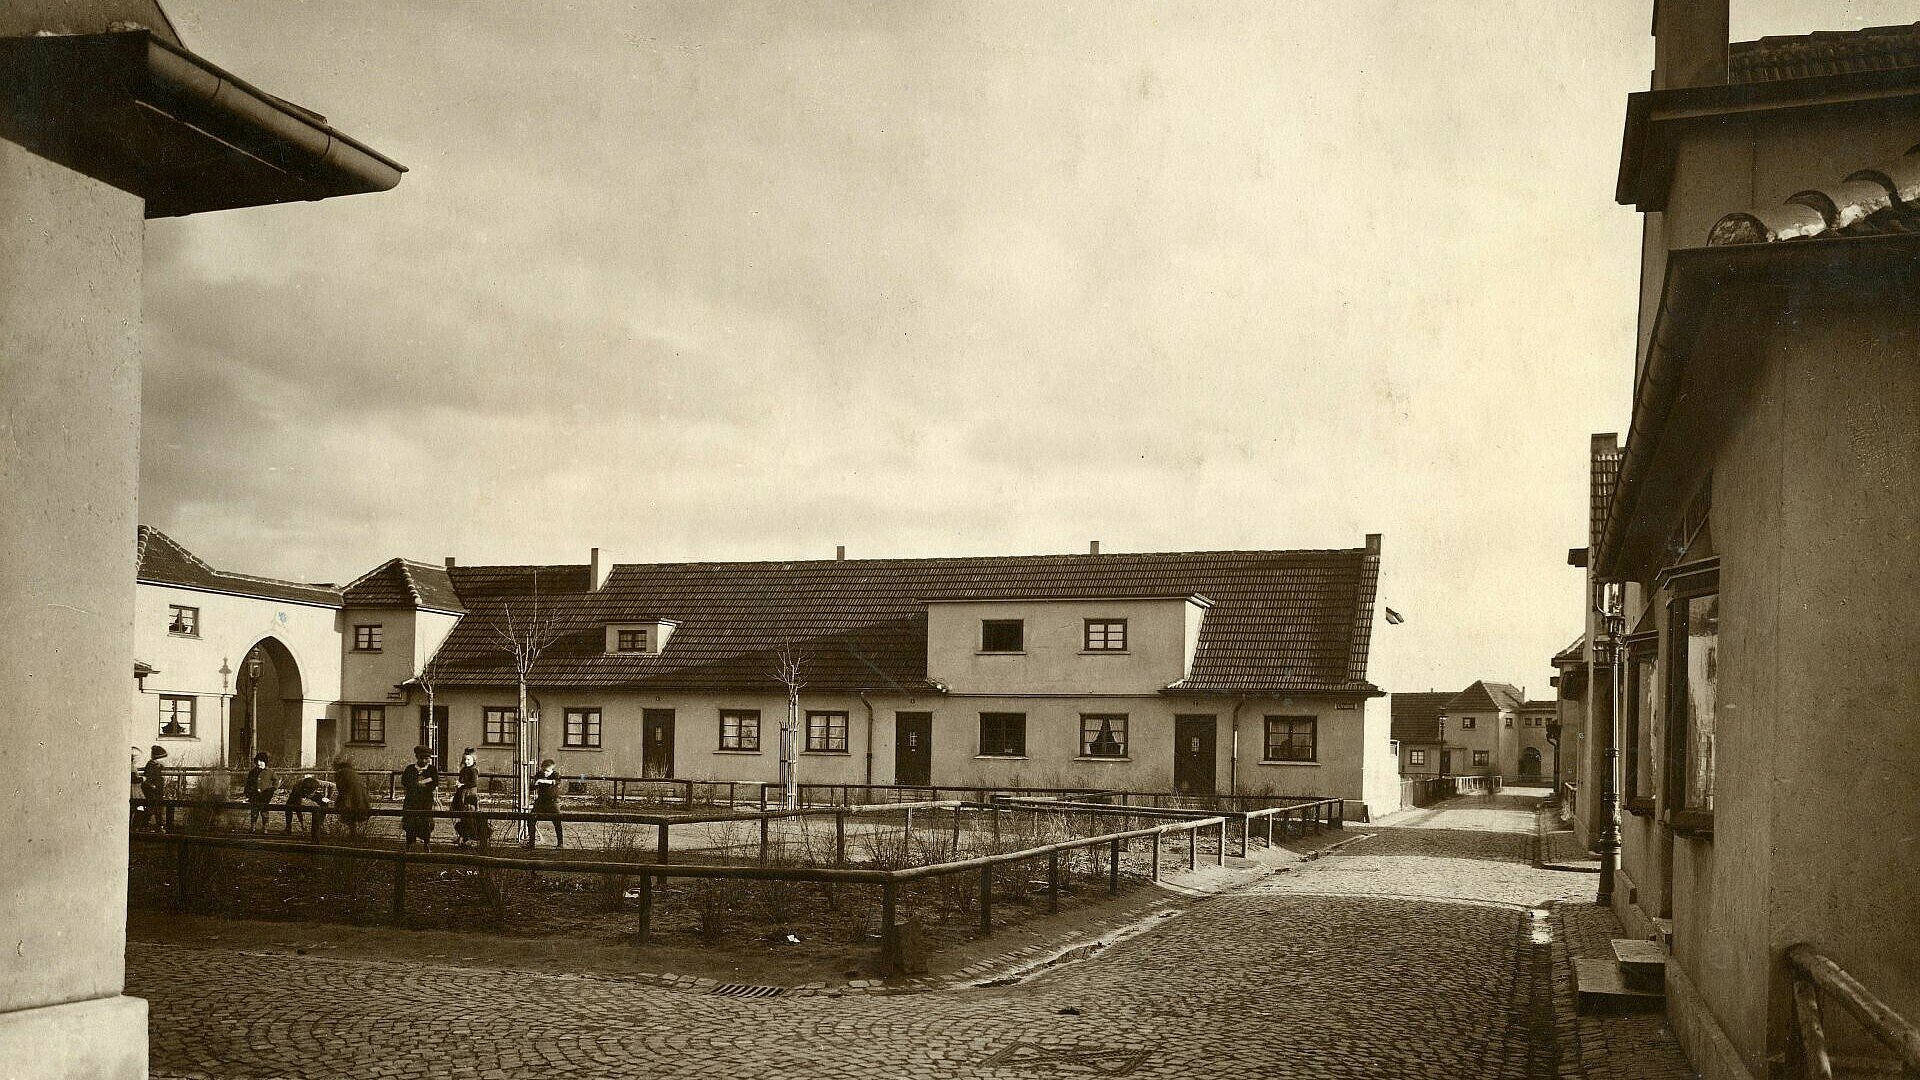 Historisches Bild von Häusern in der Milchmädchensiedlung in Poll